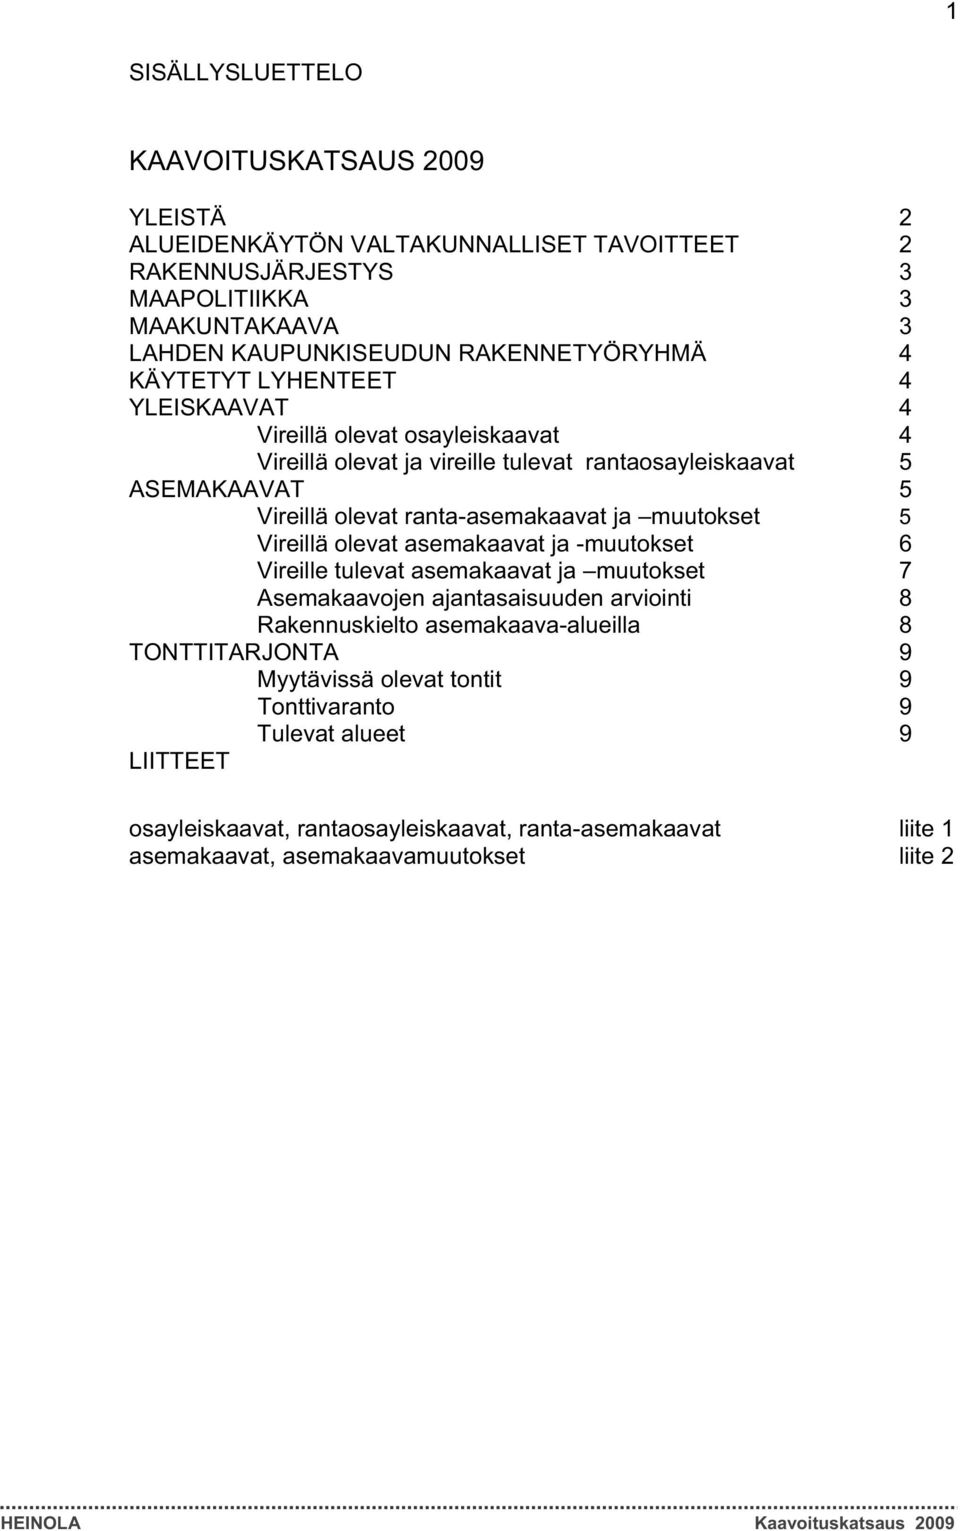 ranta-asemakaavat ja muutokset 5 Vireillä olevat asemakaavat ja -muutokset 6 Vireille tulevat asemakaavat ja muutokset 7 Asemakaavojen ajantasaisuuden arviointi 8 Rakennuskielto